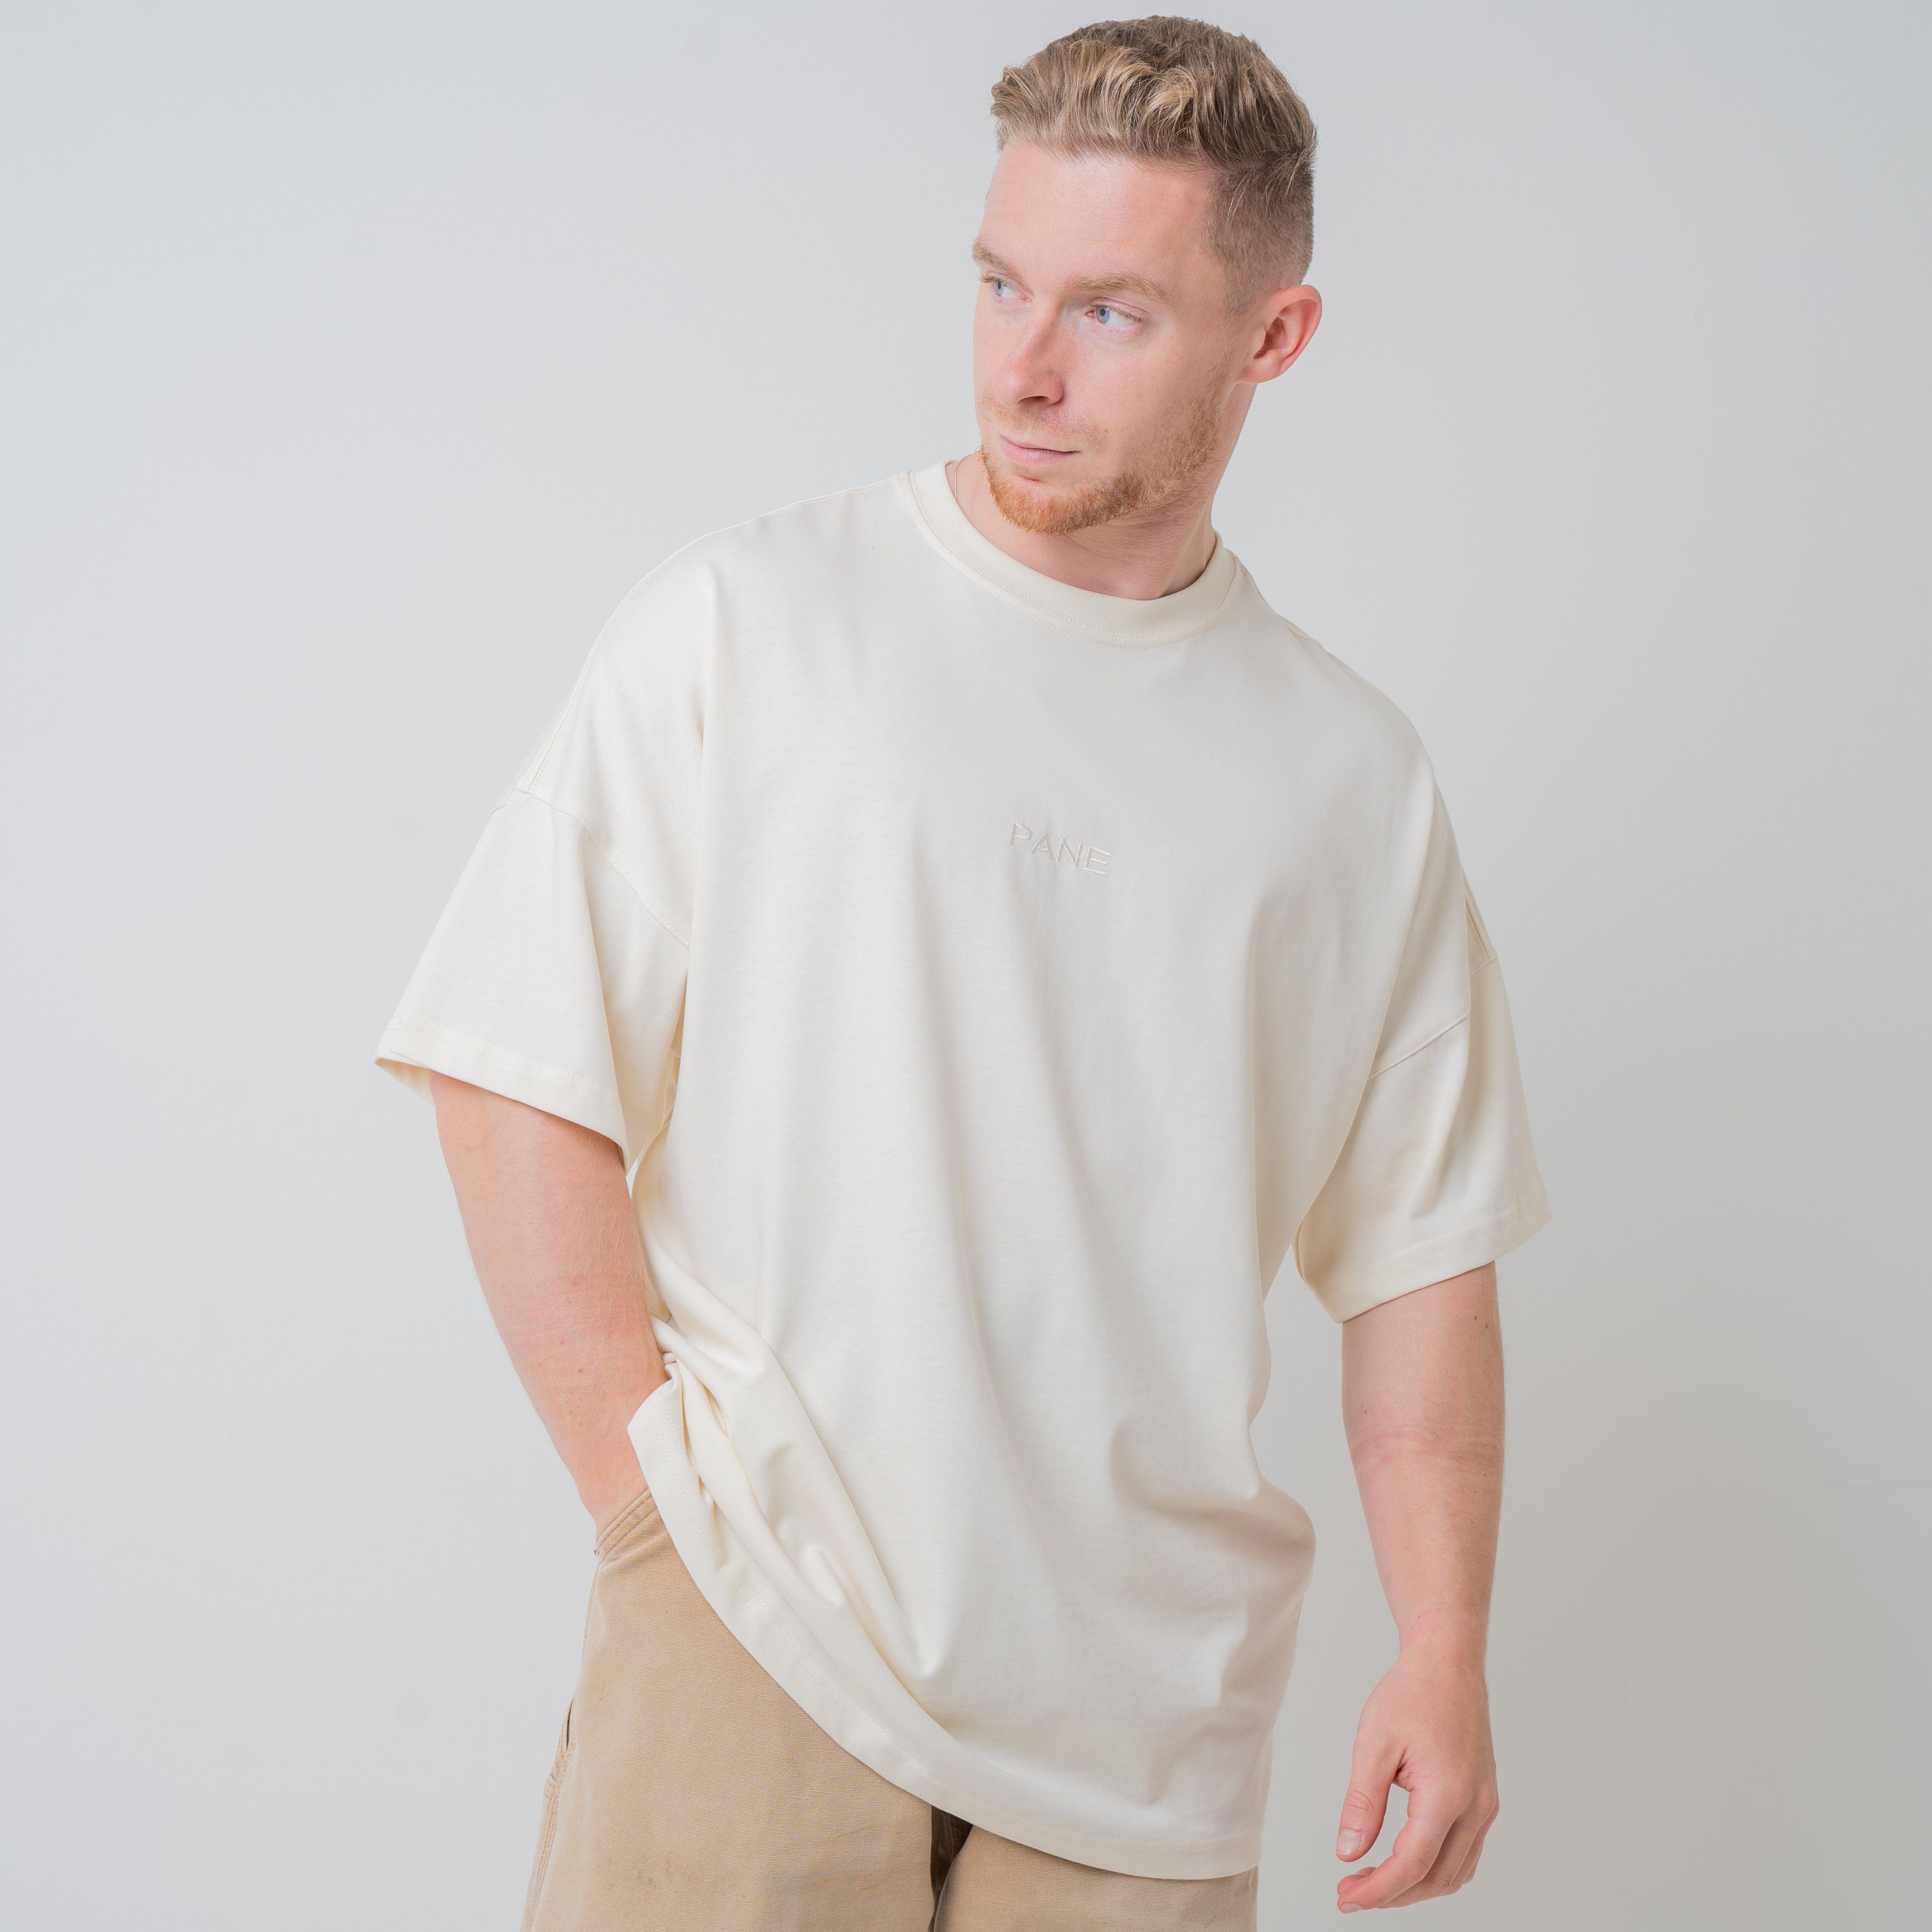 PANE CLOTHING Oversize-Shirt GOING HIGHER in Unifarbe, mit Print, aus Baumwolle, mit Rundhalsausschnitt